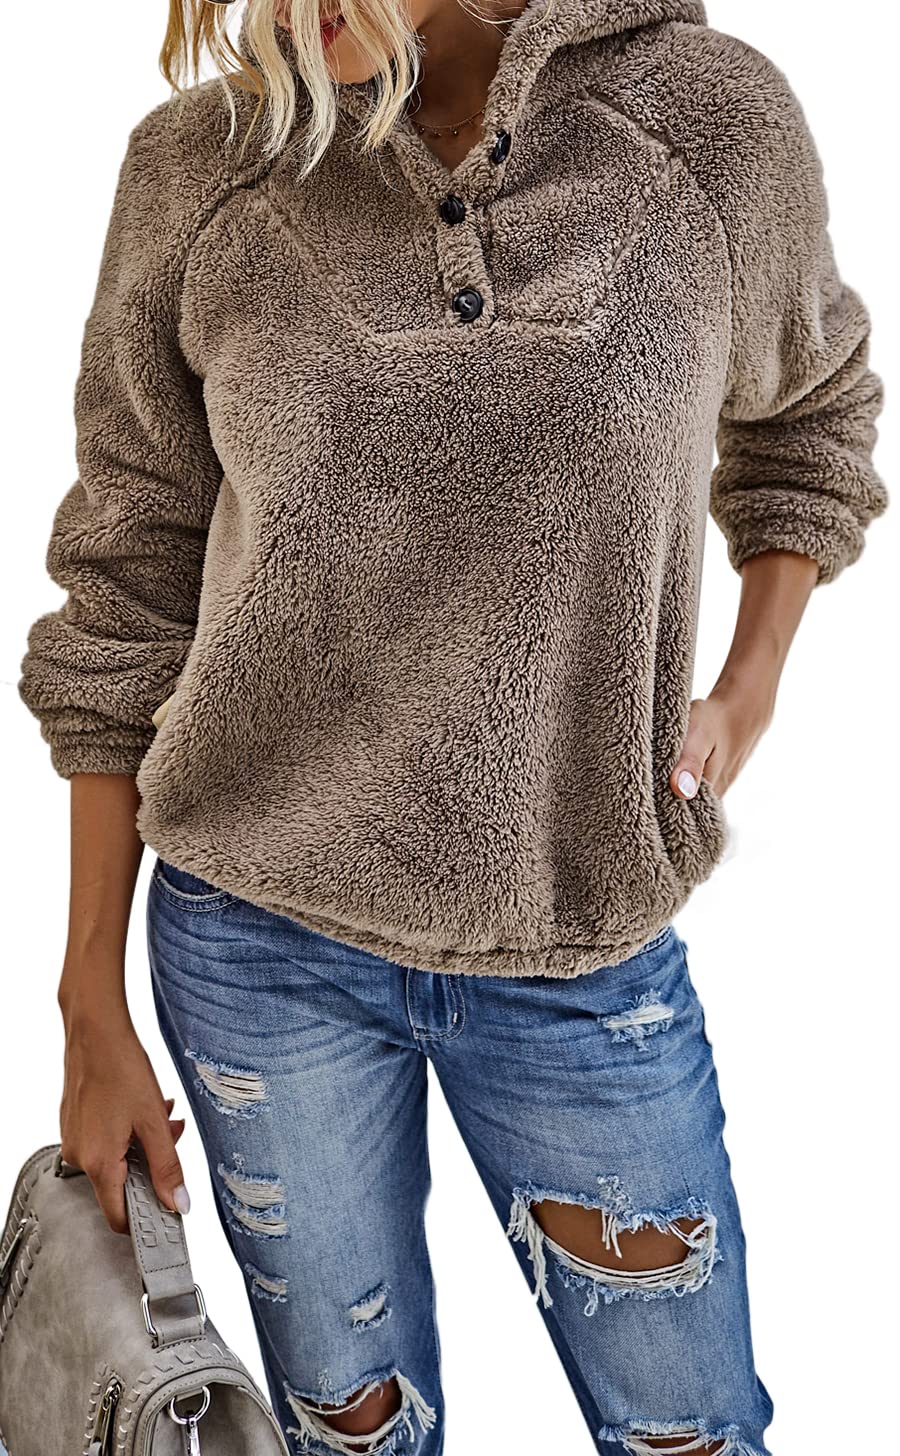 boutique en ligne Les umes Femmes Sherpa Pull Fuzzy Fleece Button Sweat Manteaux Chauds Sweats à Capuche avec Poche QDJHkRXWr en solde